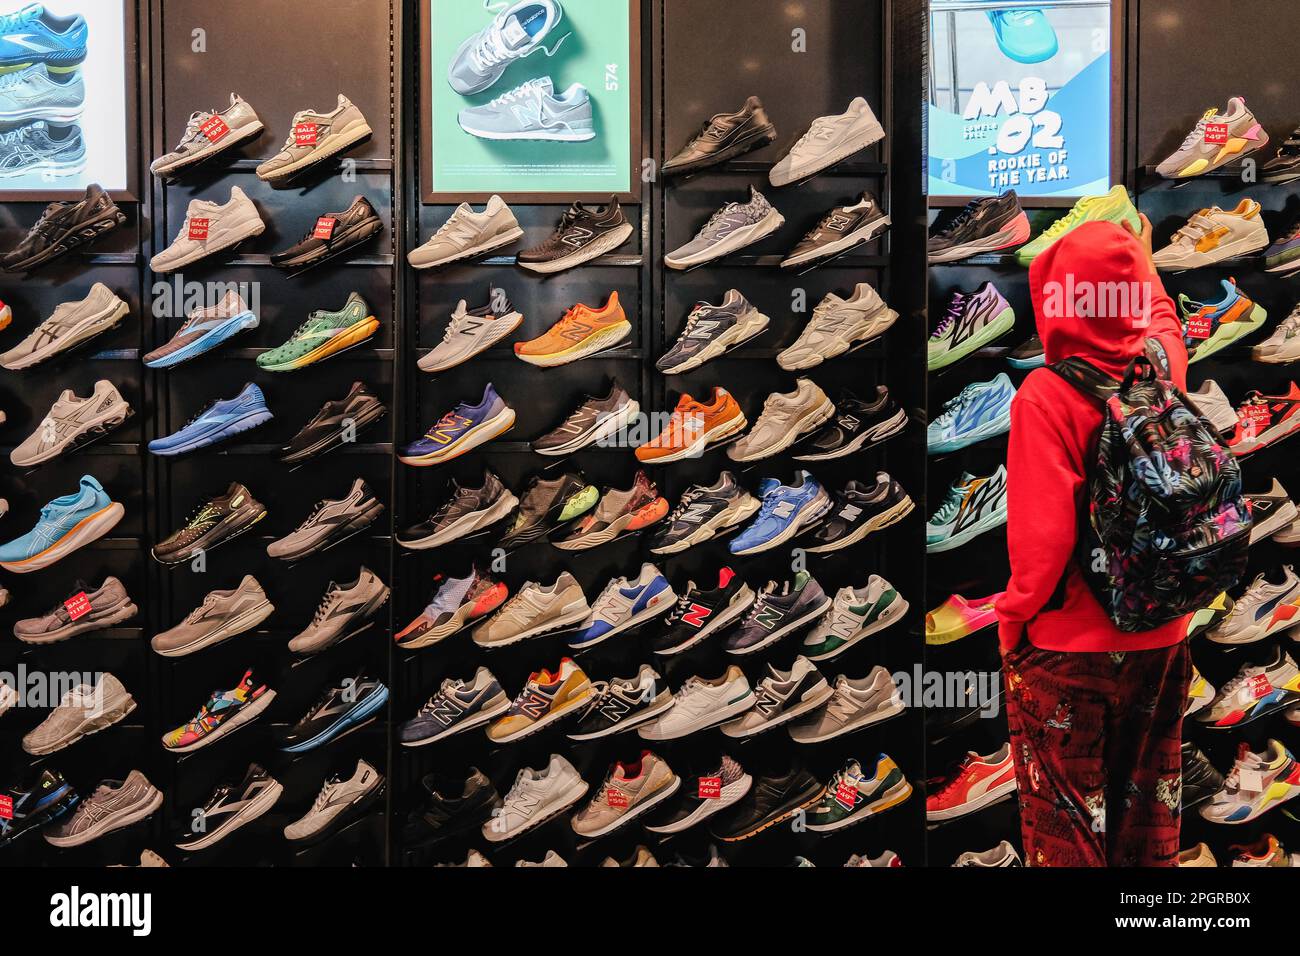 Le grandi vetrine del negozio mostrano una gamma di scarpe e abbigliamento sportivo, con i clienti che acquistano scarpe. Foot Locker, il rivenditore di calzature con sede negli Stati Uniti, sta subendo una trasformazione in Asia in quanto intende semplificare il proprio modello di business e concentrarsi sulle aree principali e sui banner. Come parte di ciò, Foot Locker chiuderà sia i suoi negozi di e-commerce che i negozi di Hong Kong e Macau, convertendo tutti i suoi attuali negozi di proprietà e self-operated e l'e-commerce di Singapore e Malesia in un modello di licenza. I risultati del quarto trimestre 2022 di Foot Locker hanno rivelato che l'azienda sta prendendo una serie Foto Stock